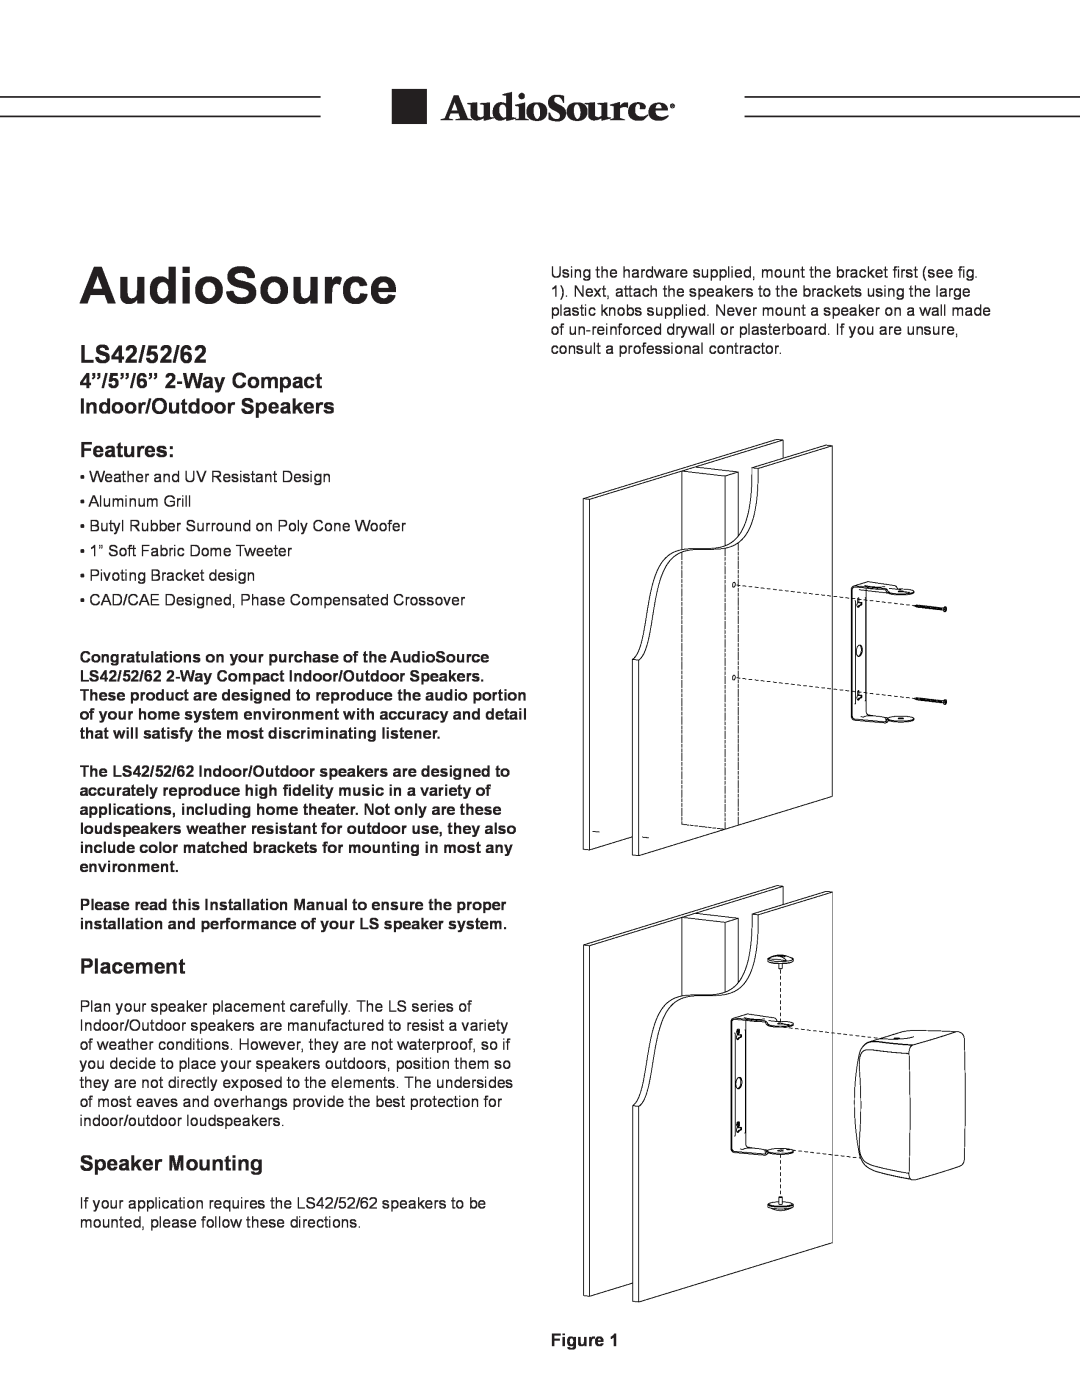 AudioSource AudioSource 4/5/6 2-Way Compact Indoor/Outdoor Speakers installation manual Features, Placement, LS42/52/62 